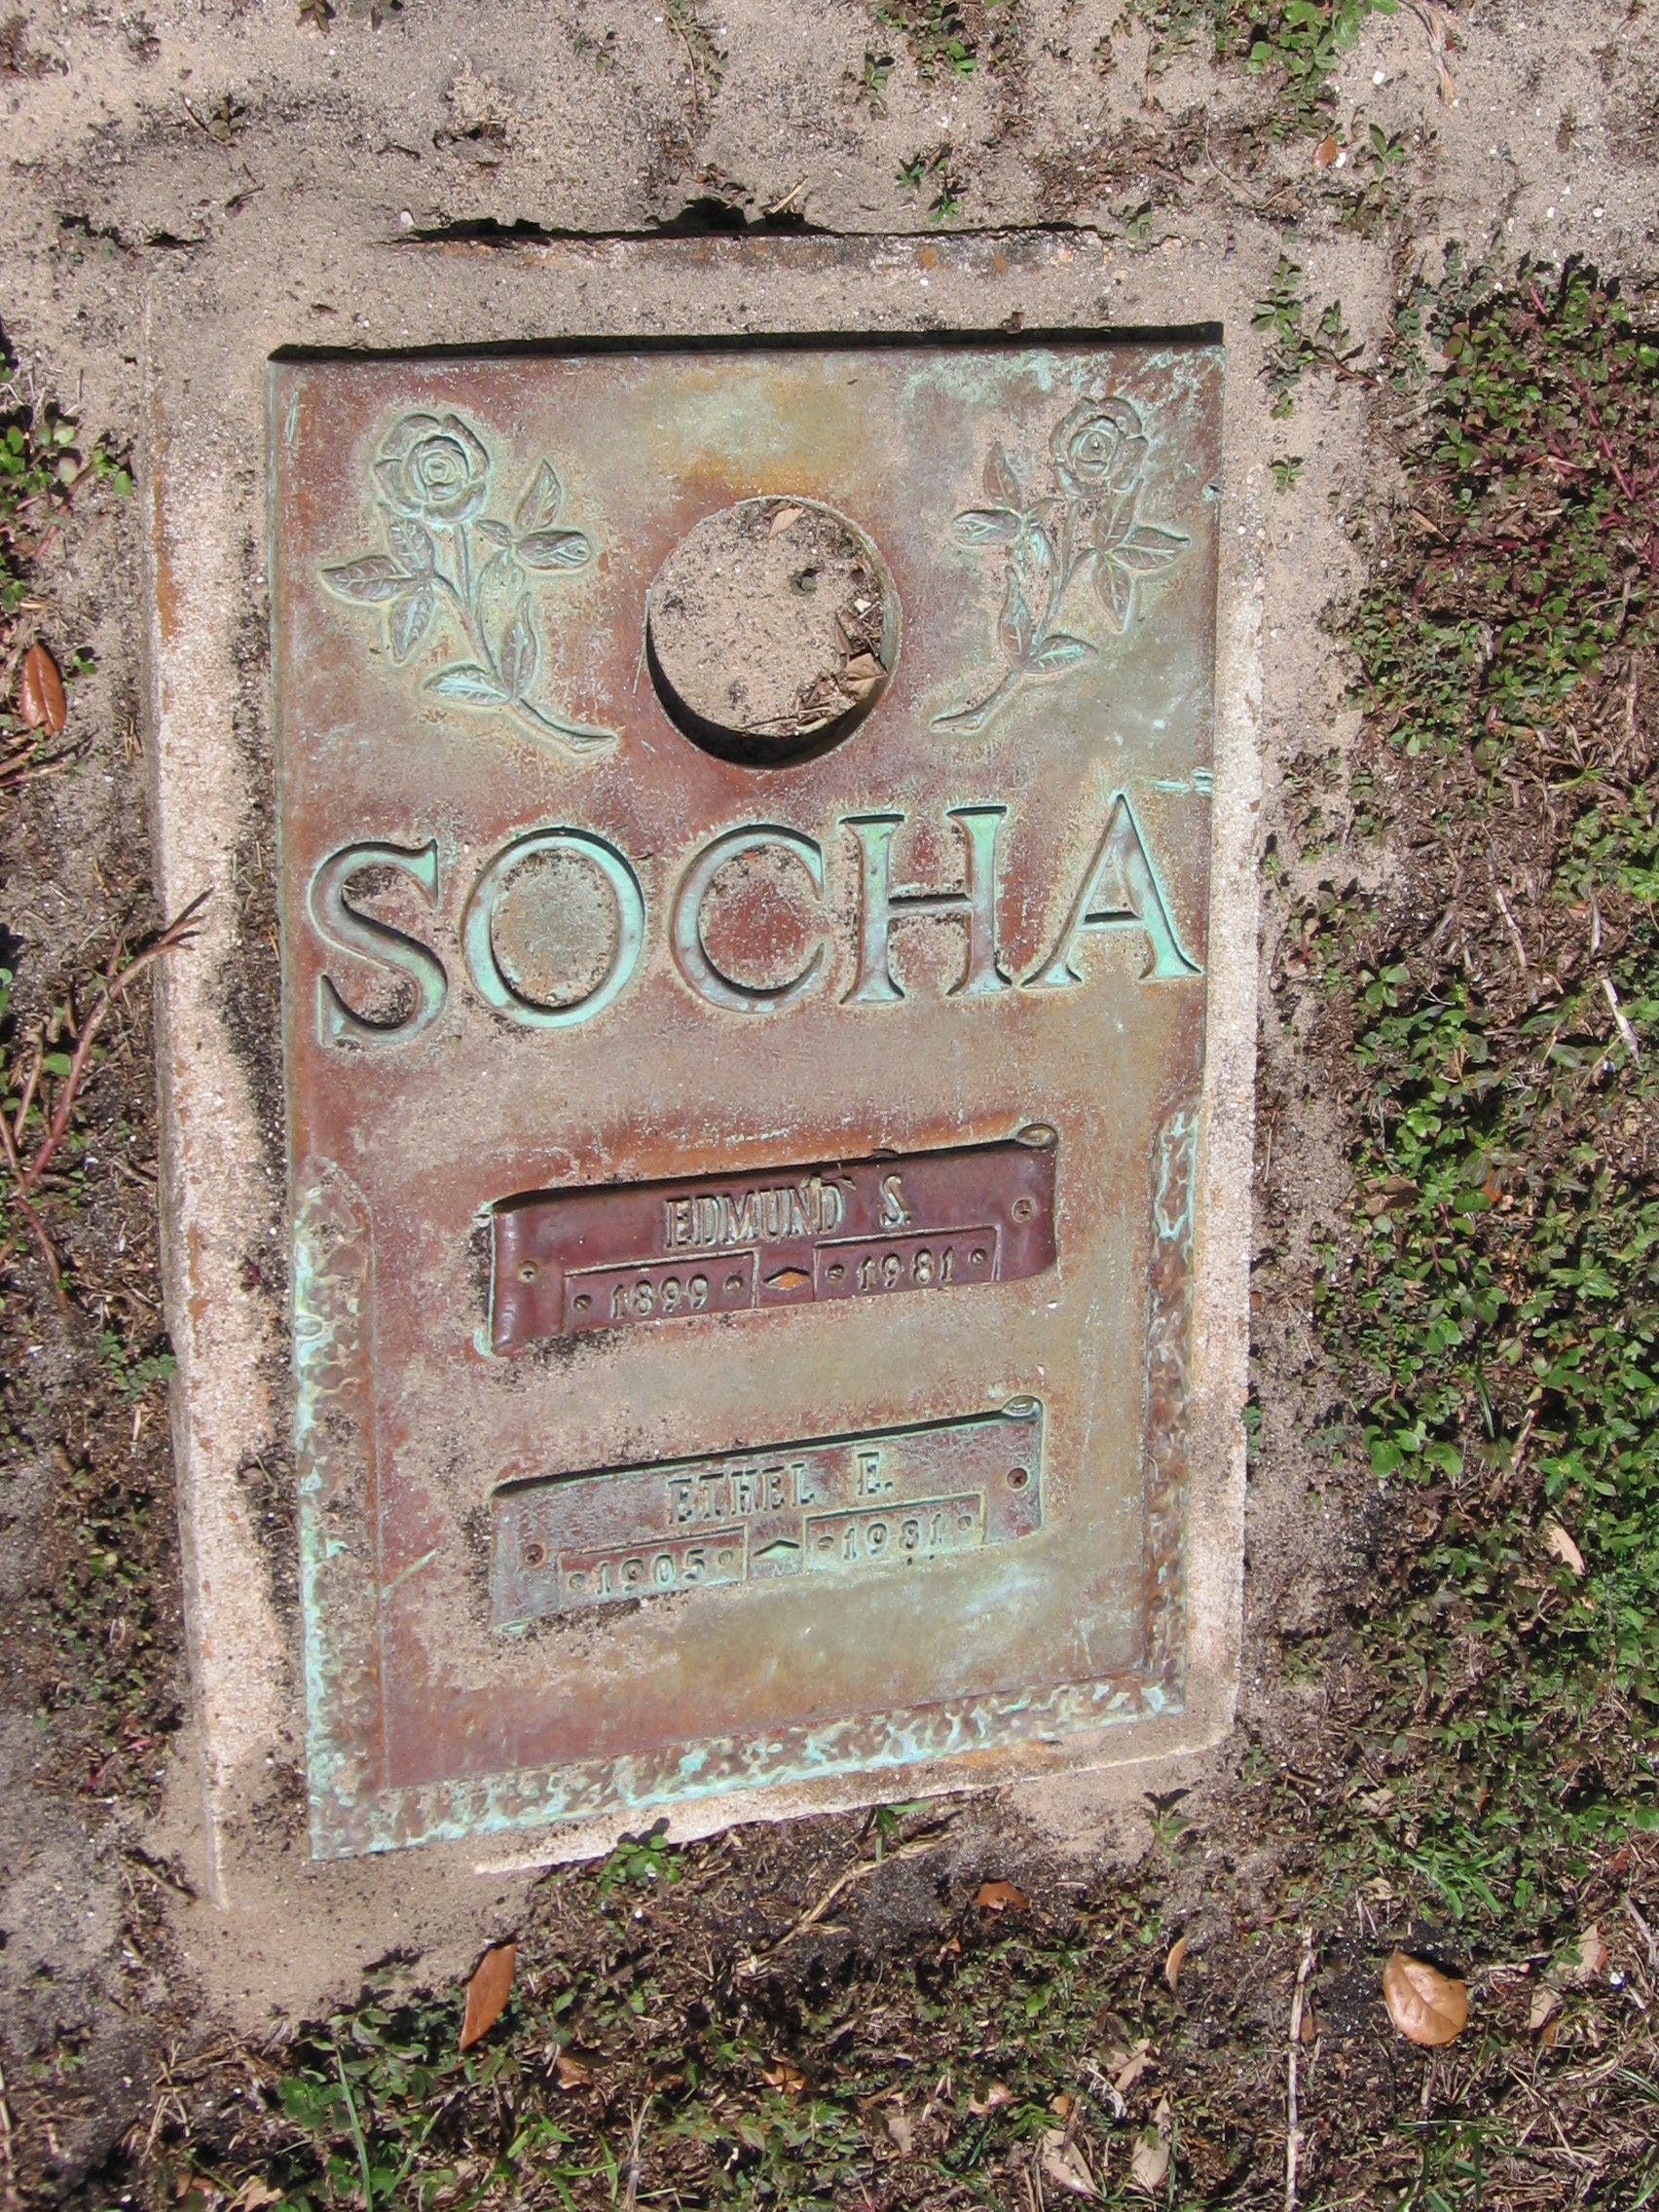 Ethel E Socha